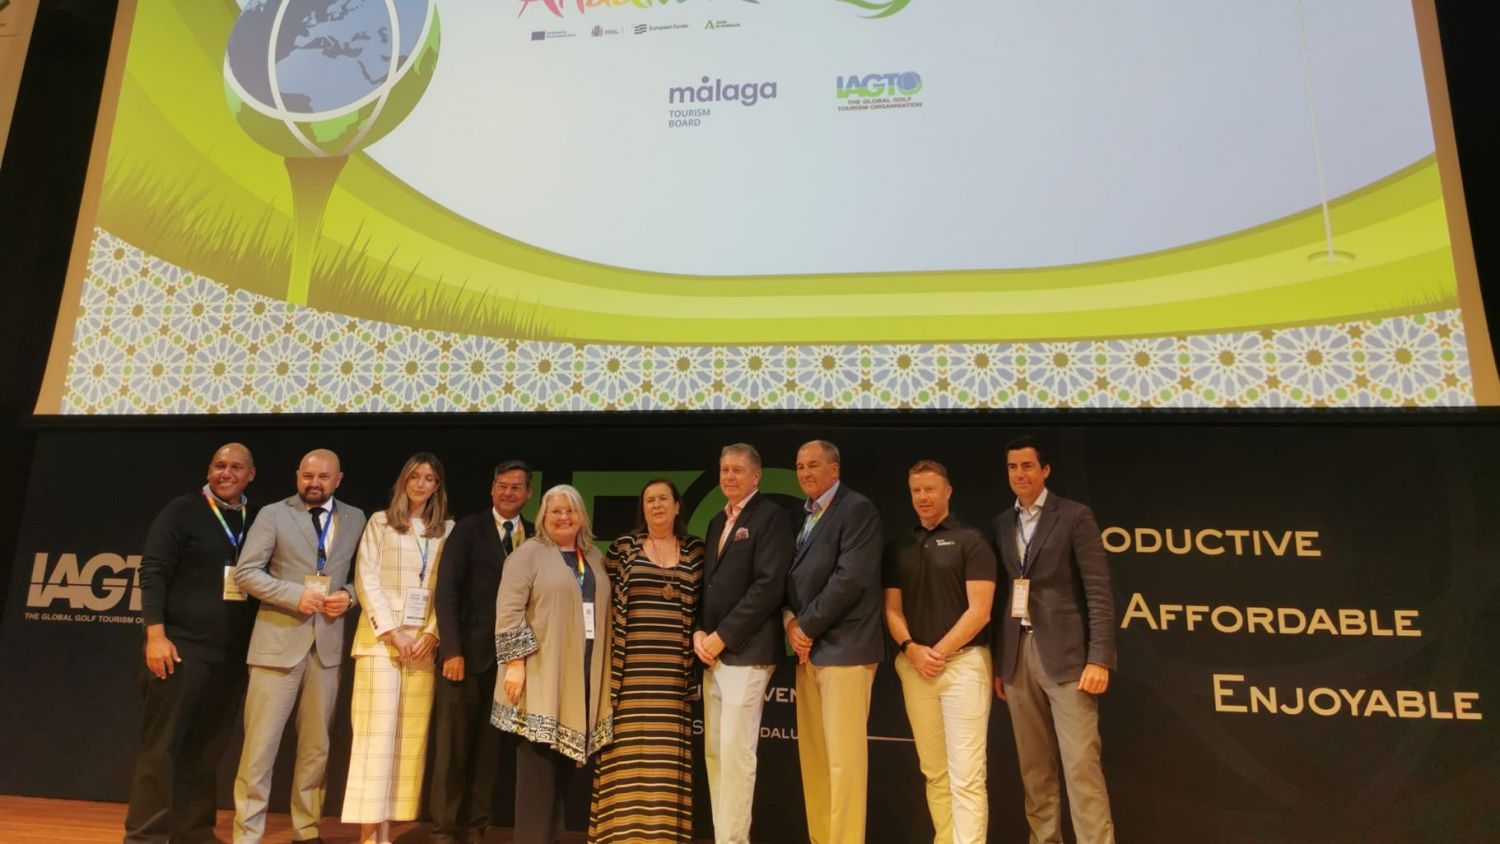 Andalucía acoge la convención europea de los operadores internacionales de golf con más de 800 profesionales